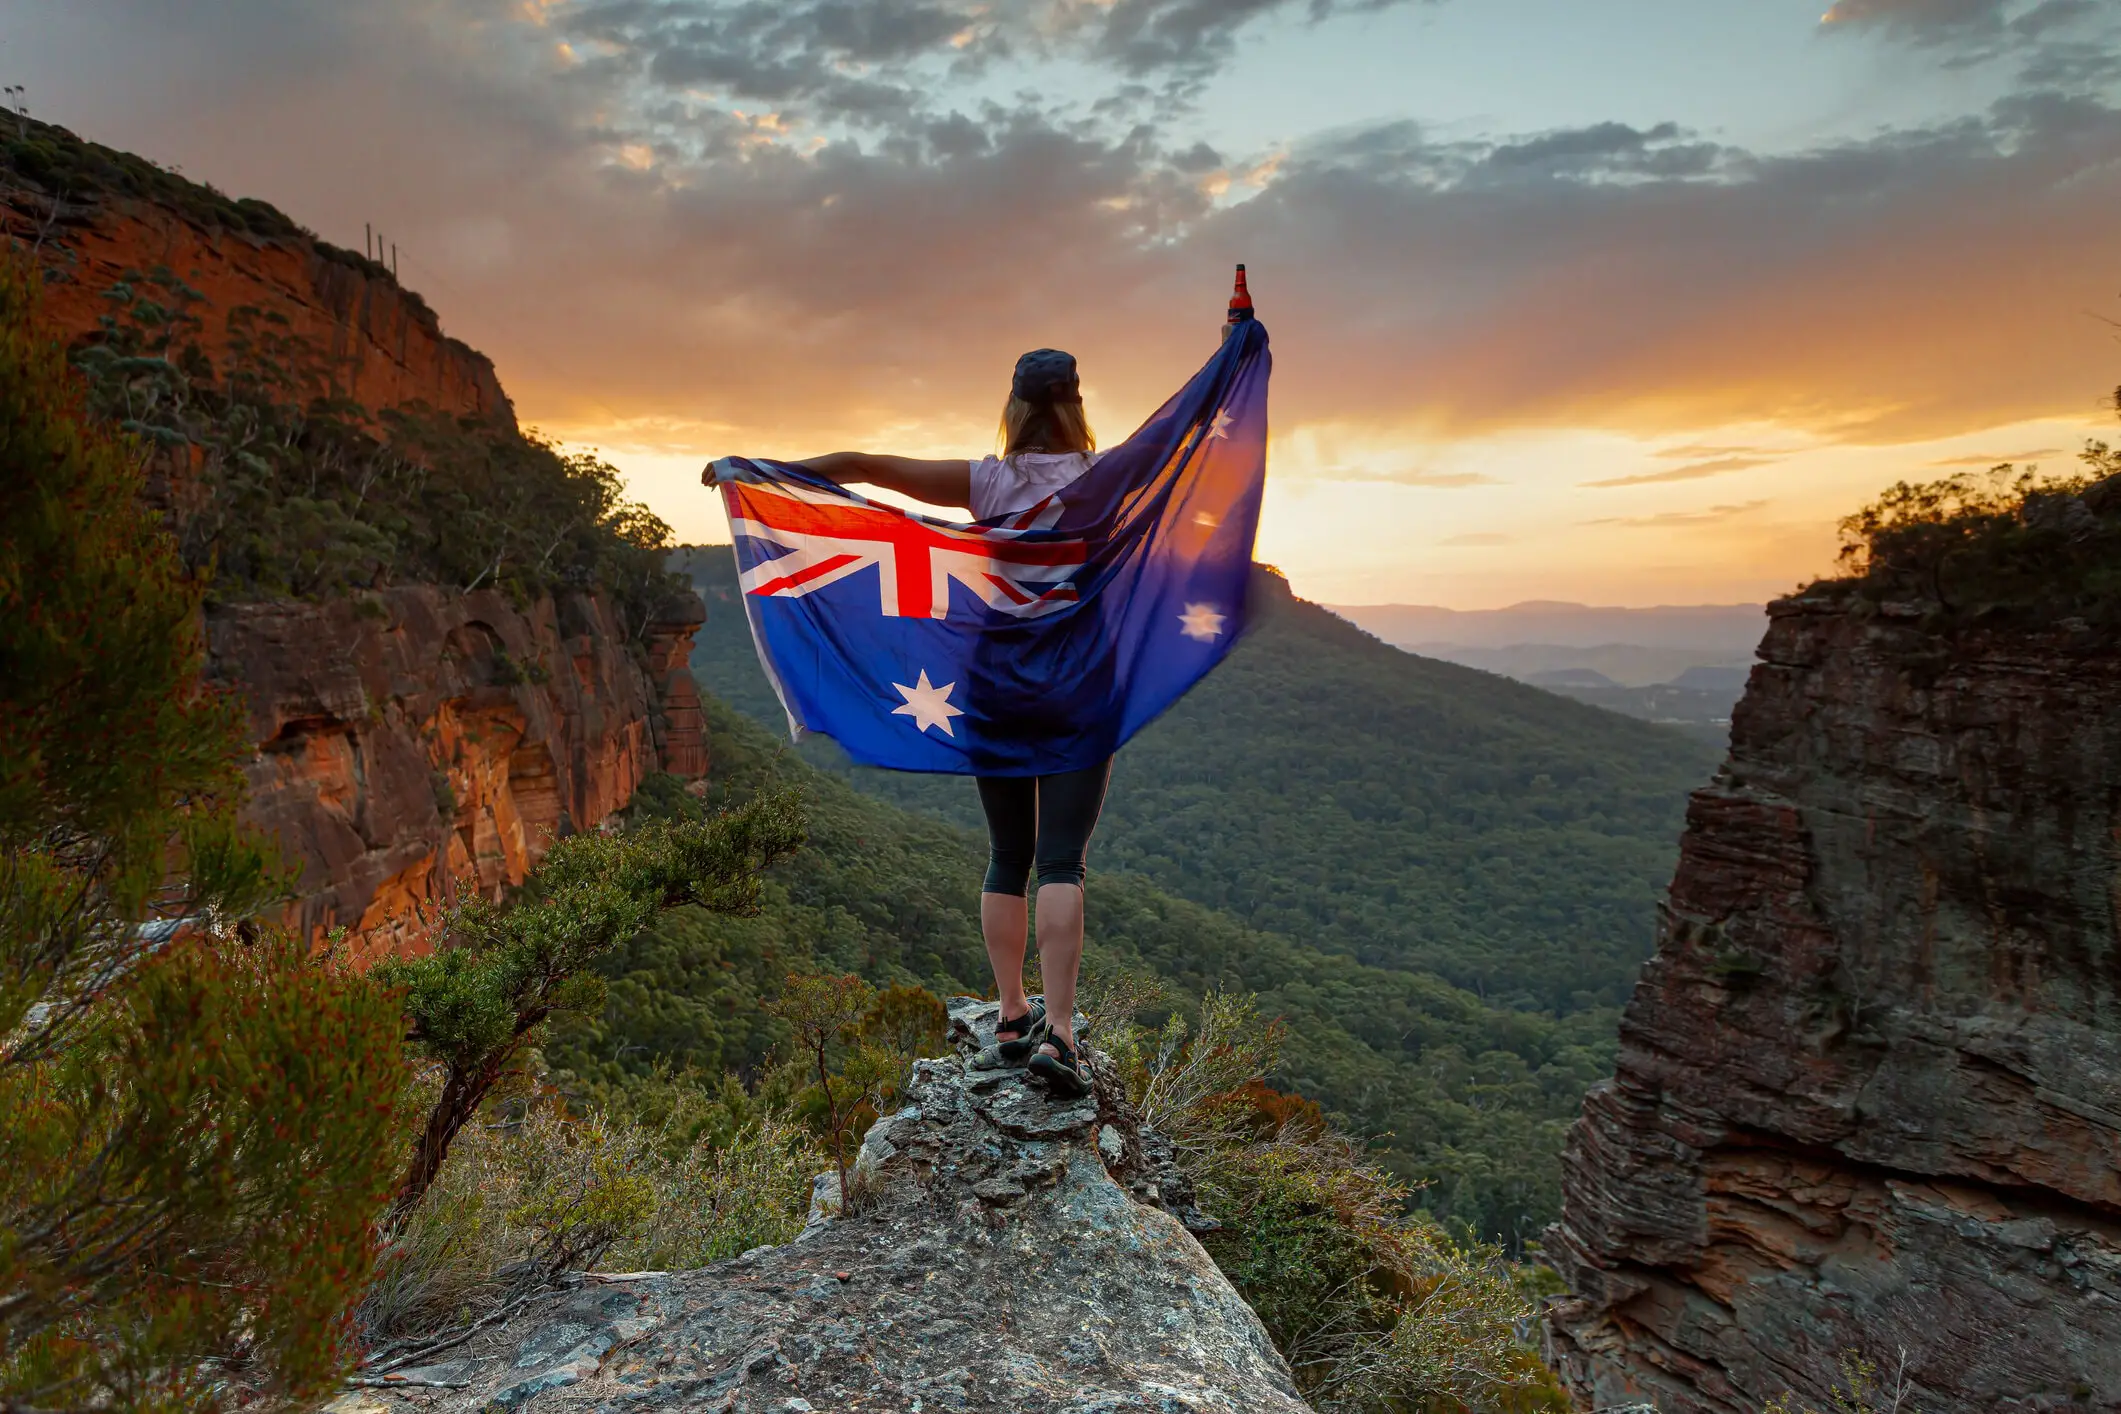 intrepid travel careers australia